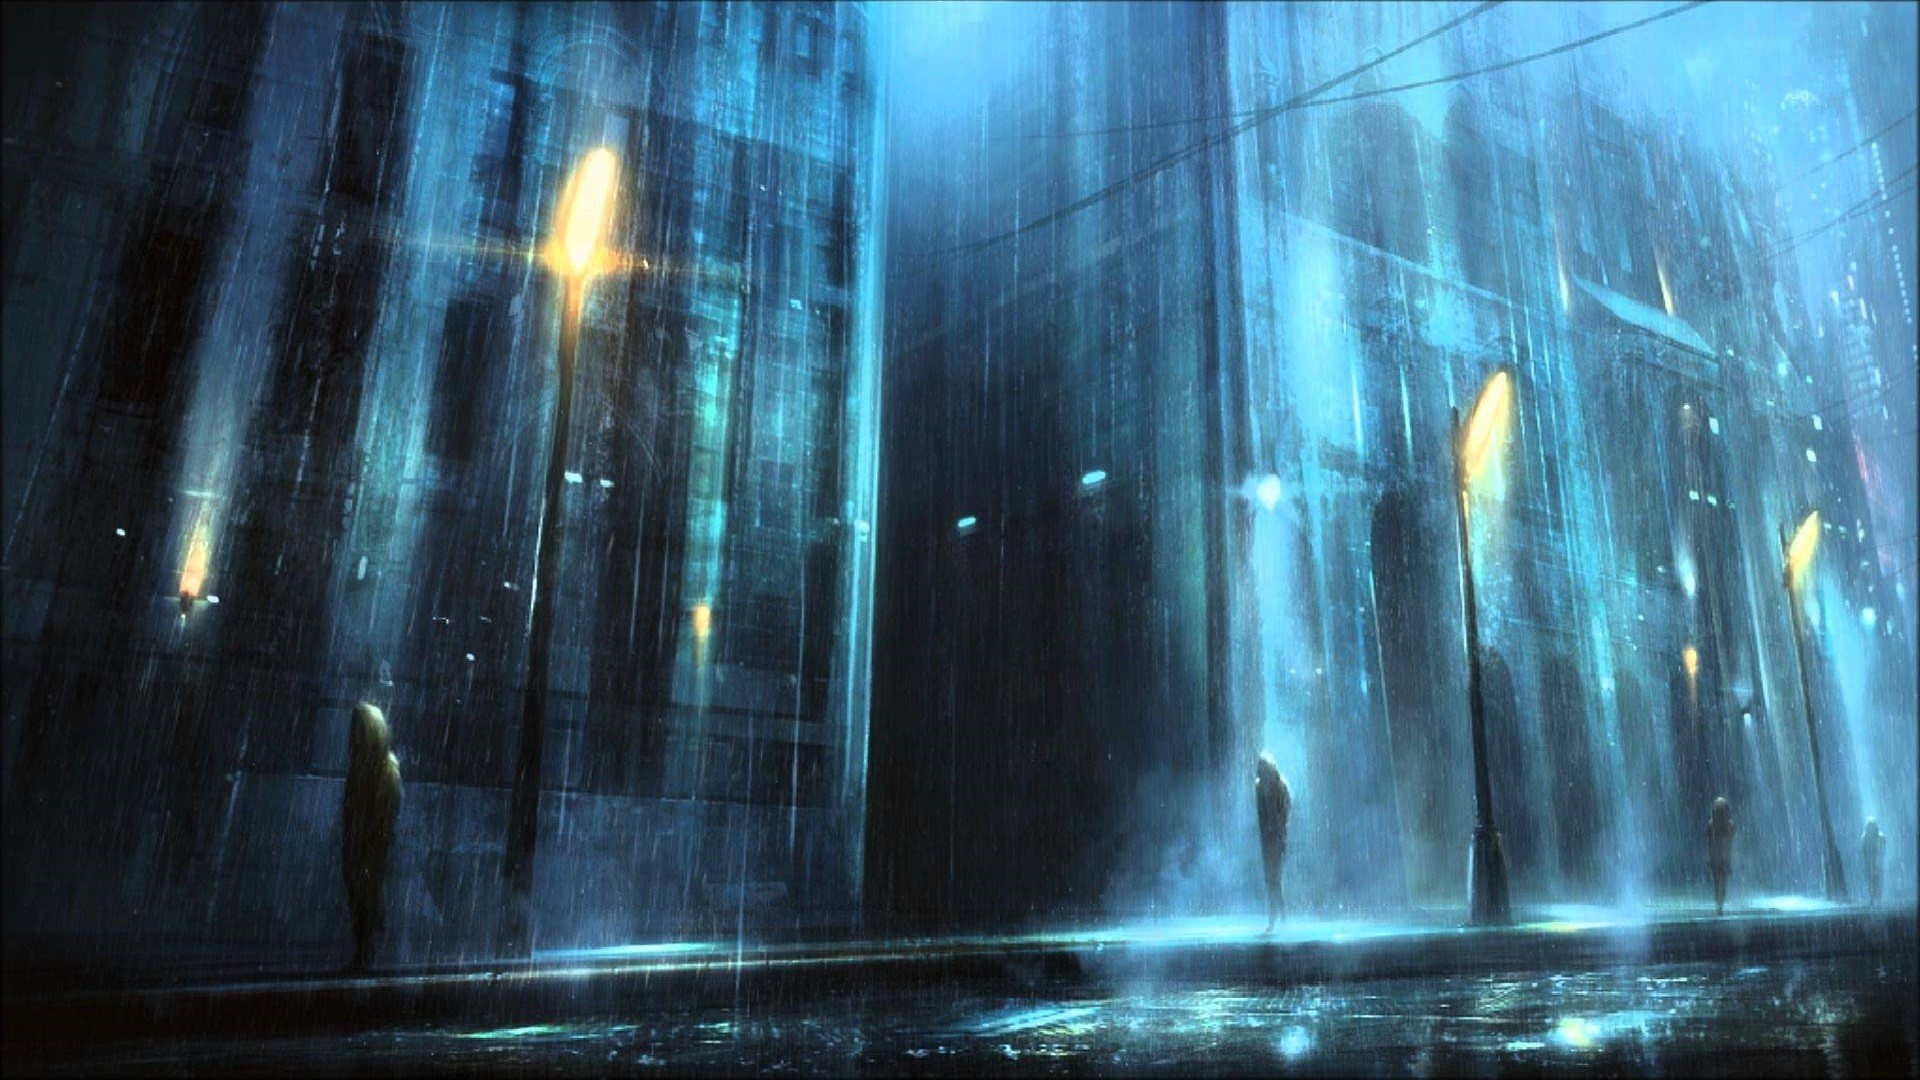 Anime style raining background  YouTube